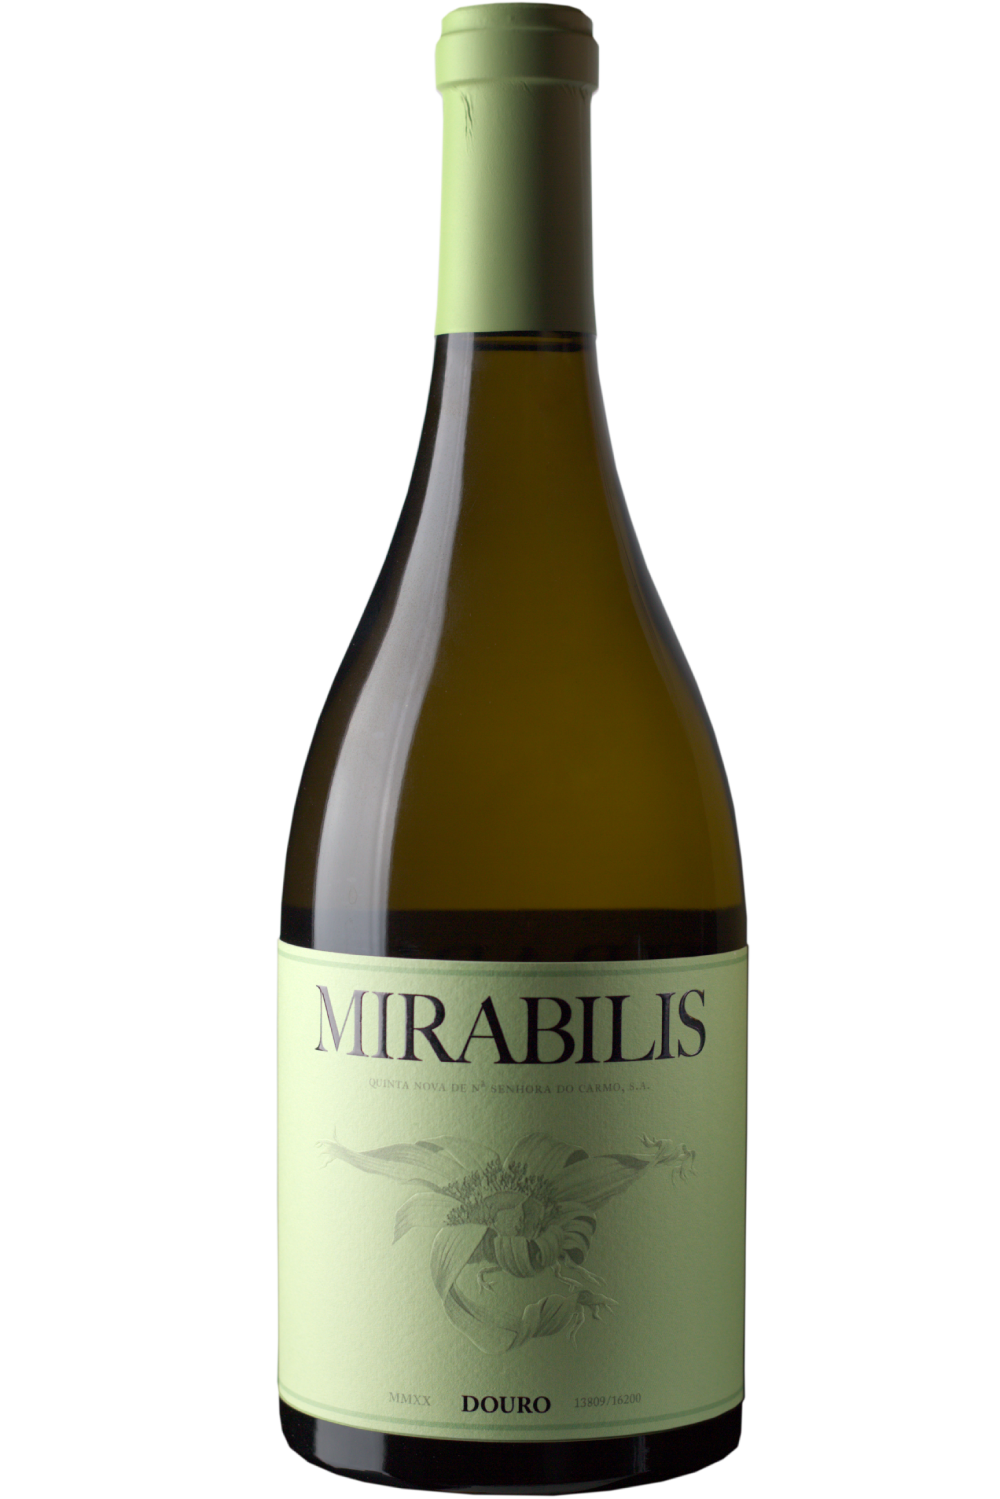 WineVins Mirabilis Branco 2020